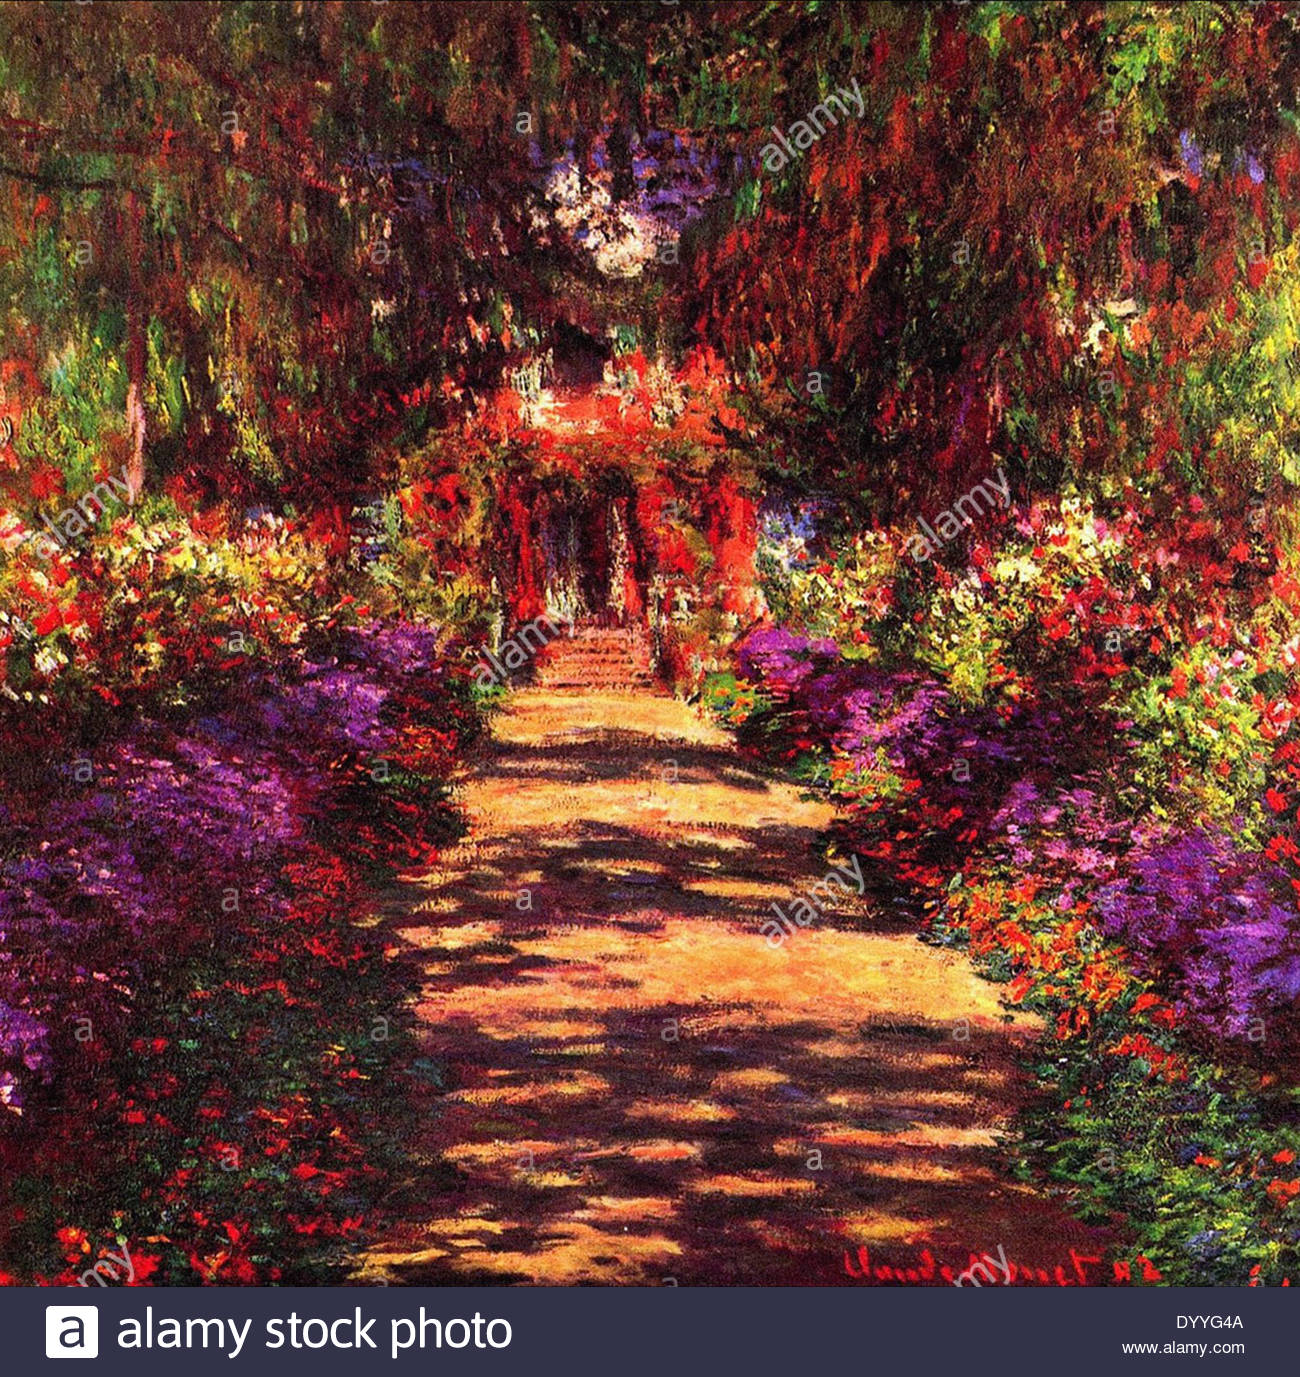 Claude Monet Garten Best Of Monet Painting Stock S & Monet Painting Stock